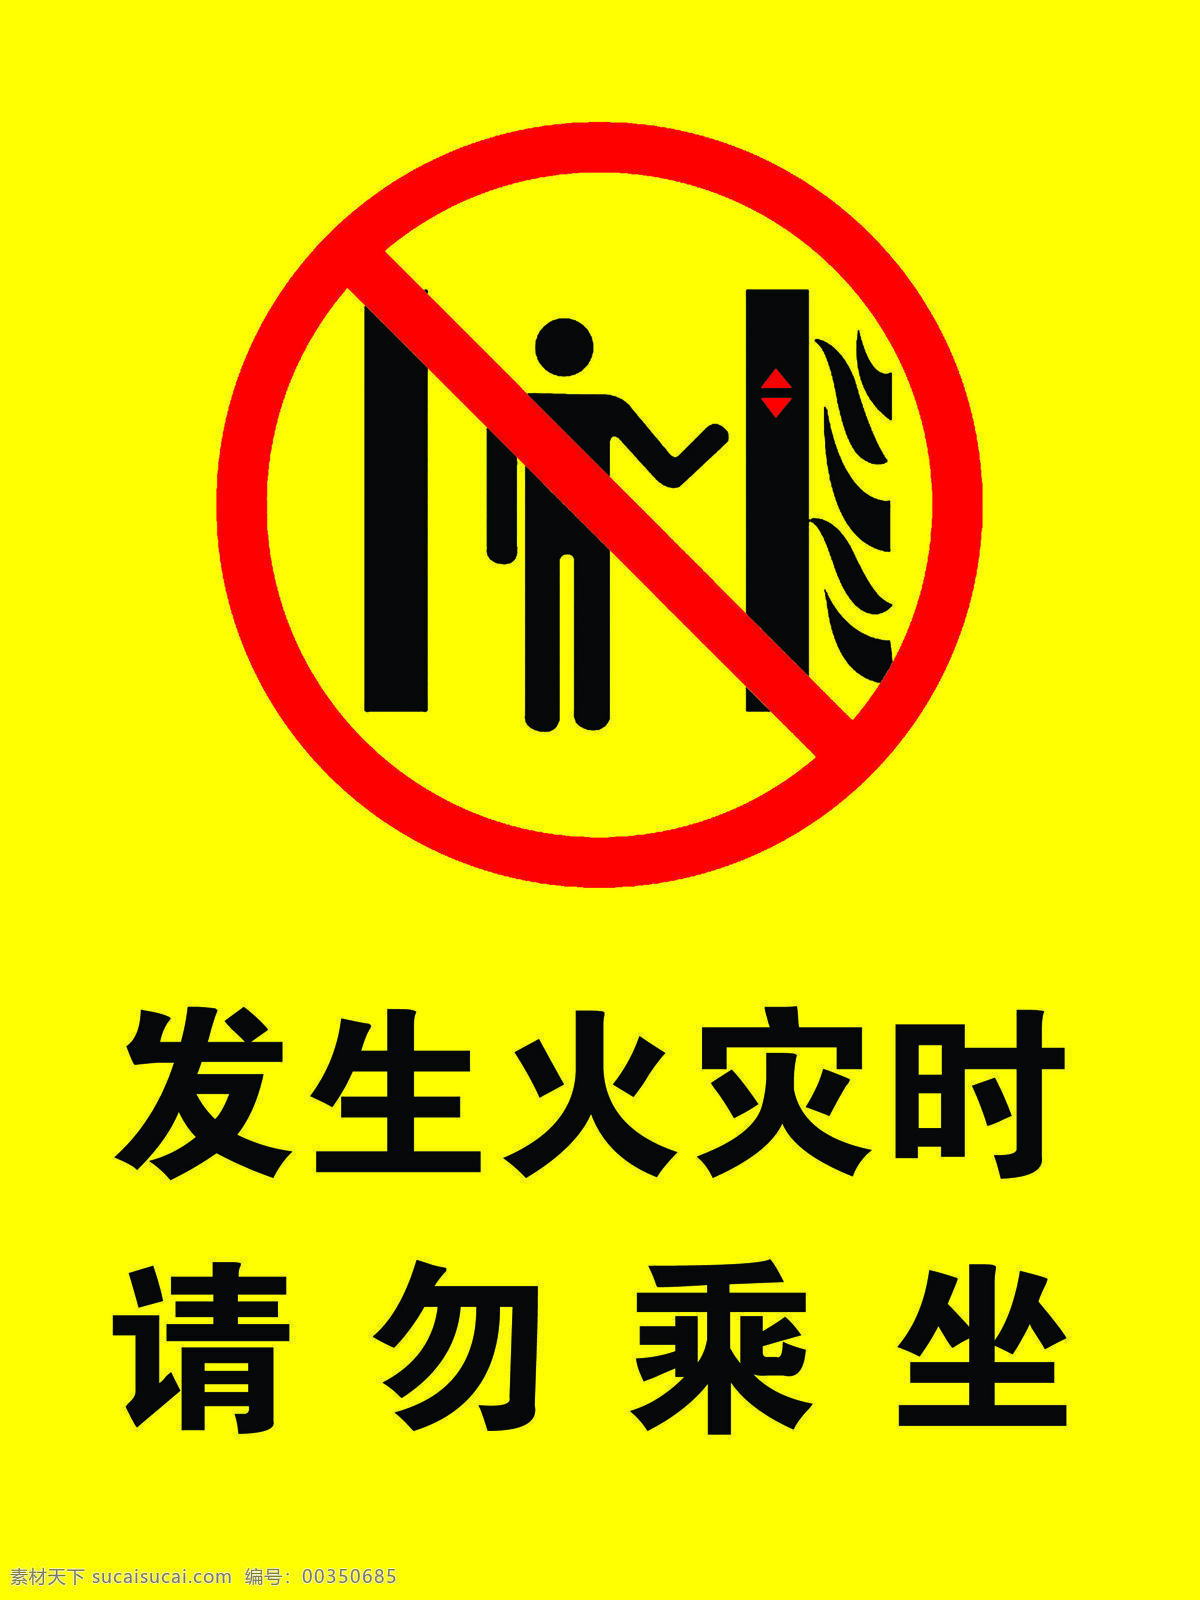 发生火灾时 请勿乘坐电梯 电梯 温馨提示 电梯警示语 电梯文化 火灾 标志图标 公共标识 标志 告知 牌 警示 分层